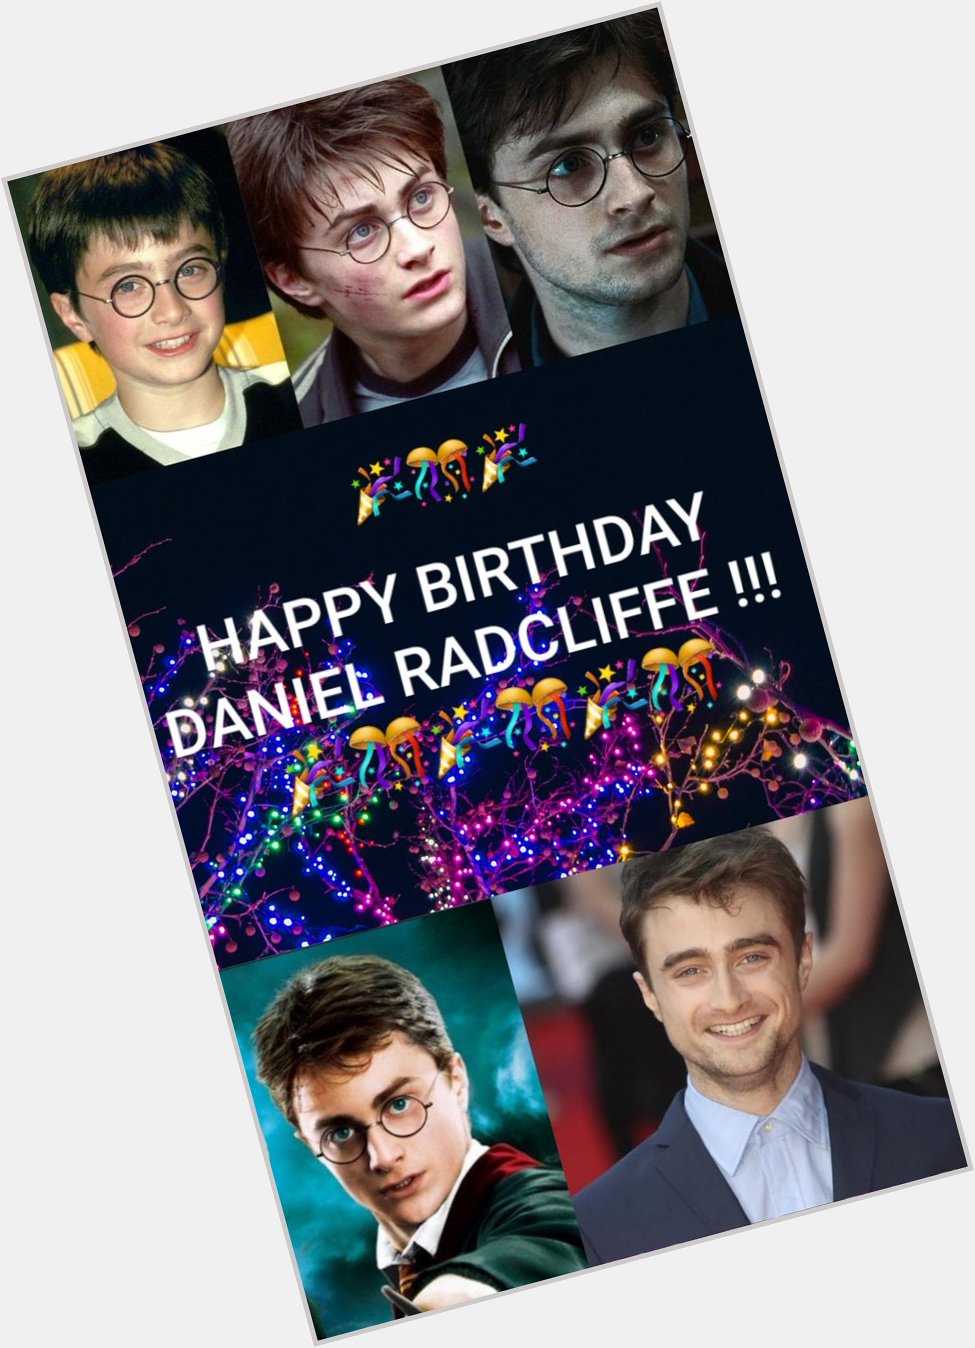 Happy birthday Daniel Radcliffe !!!    31 yo today   